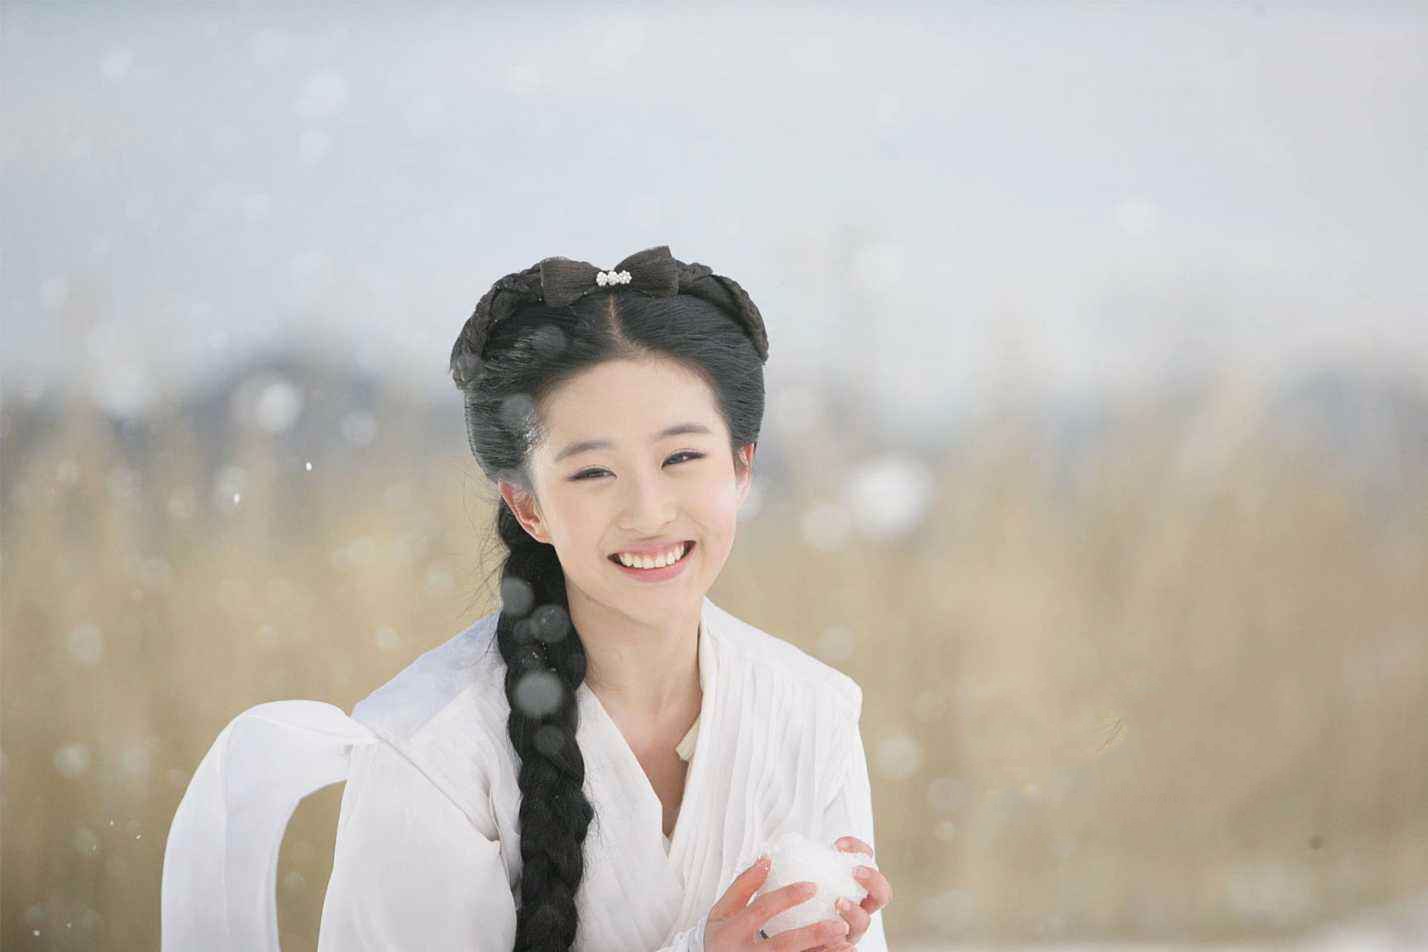 刘亦菲,一个充满仙气的女子